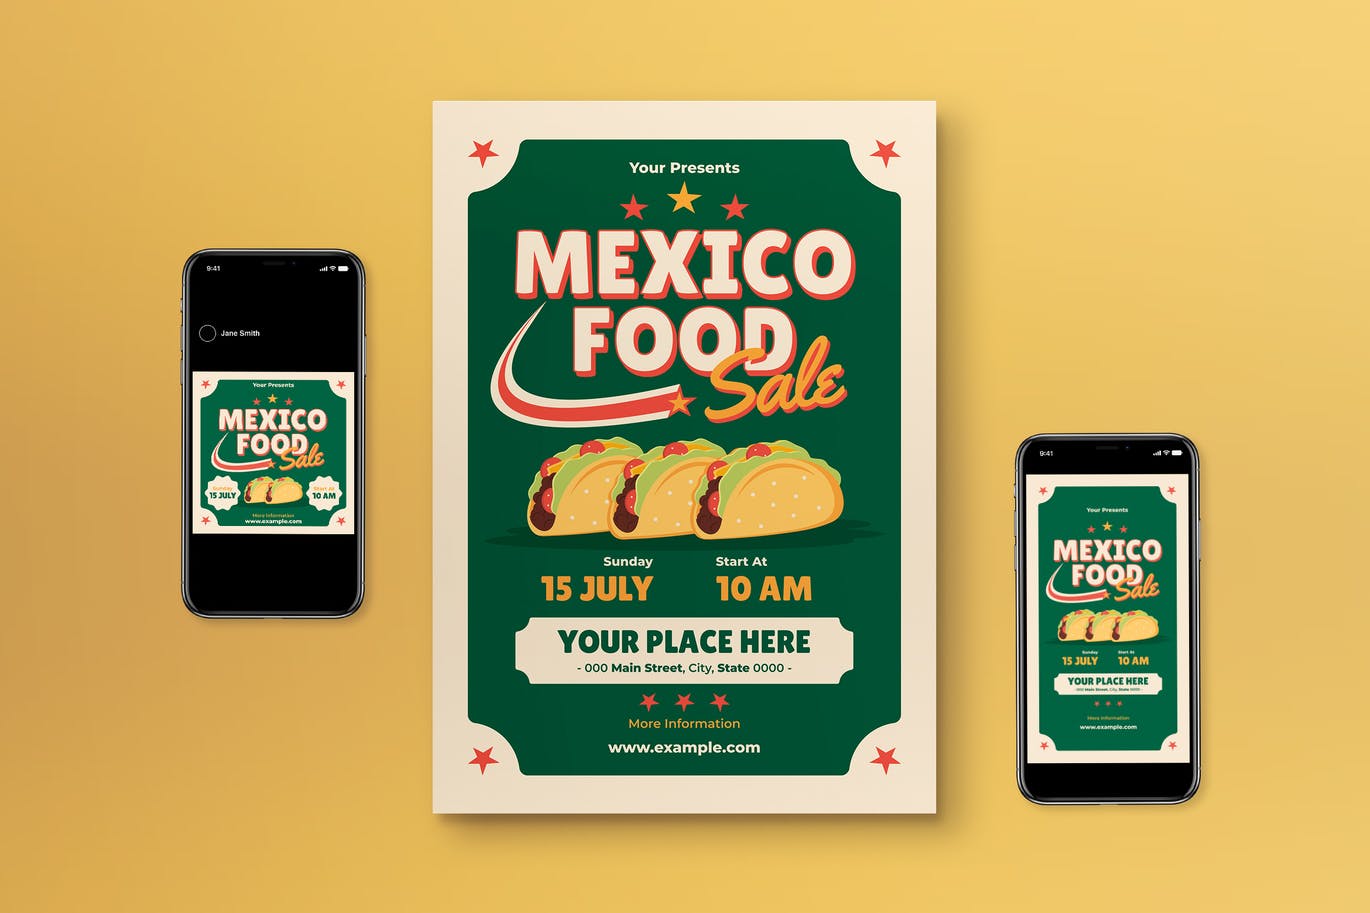 墨西哥饼食品销售宣传单设计 Mexico Food Sale Flyer Set 设计素材 第1张